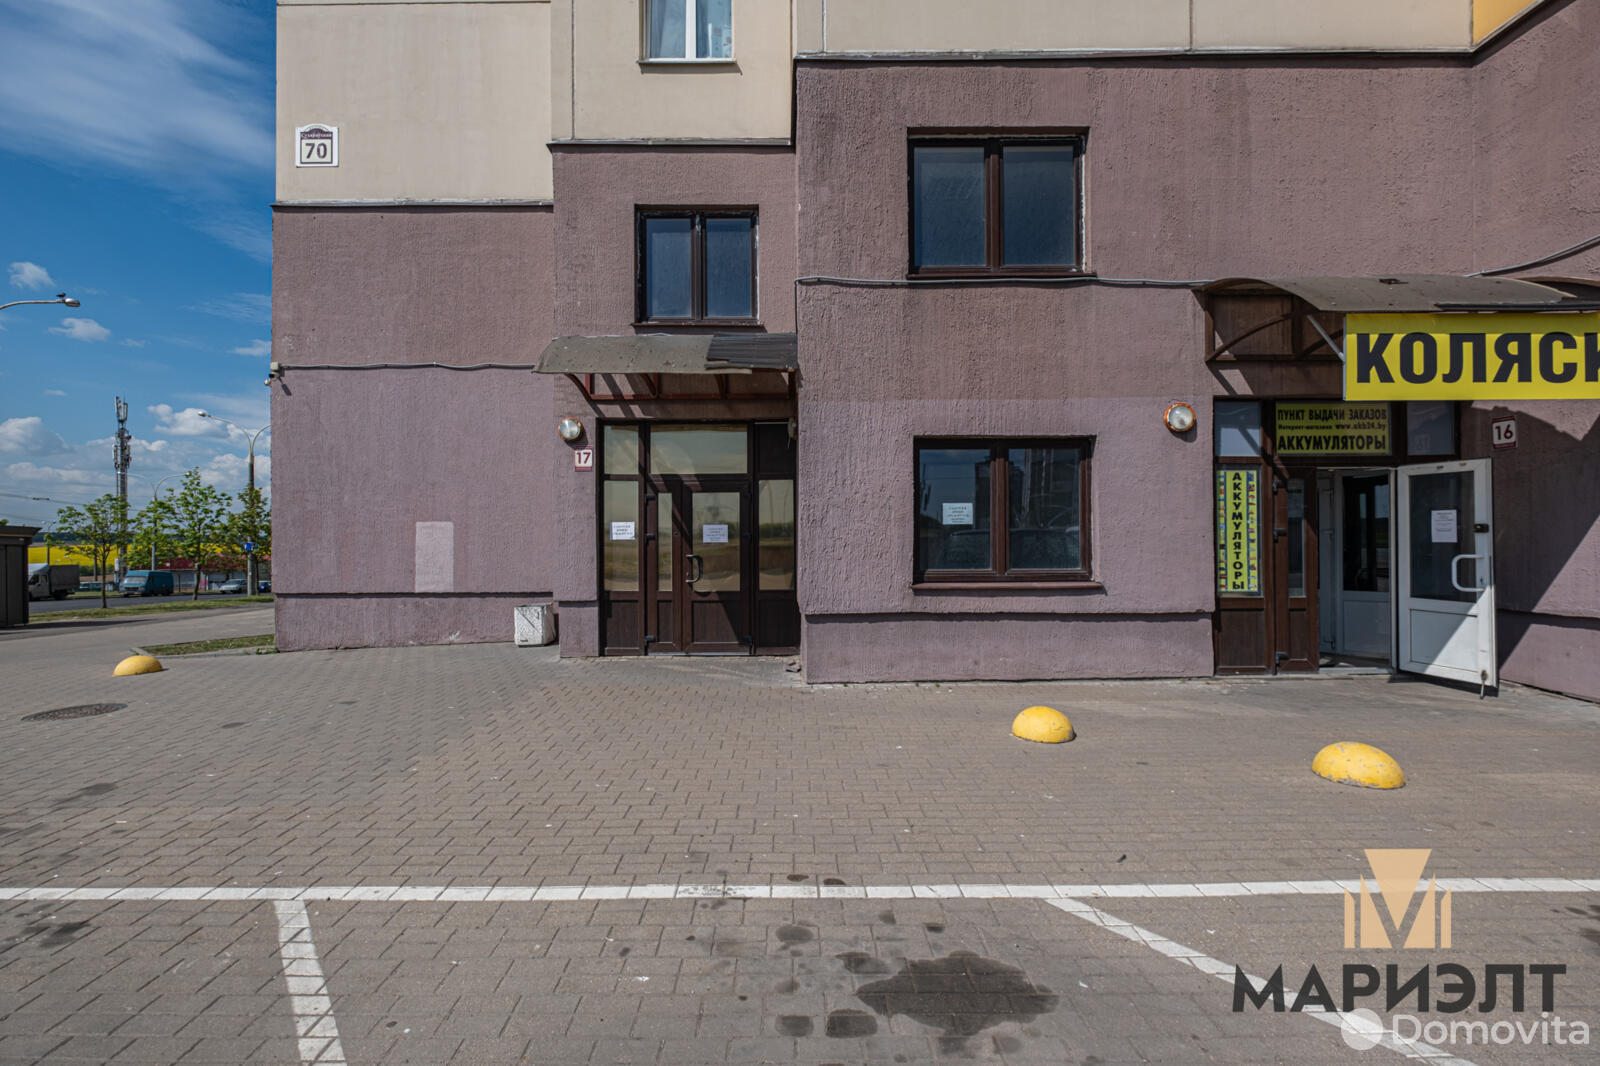 Аренда офиса на ул. Сухаревская, д. 70 в Минске, 114300USD, код 12108 - фото 3